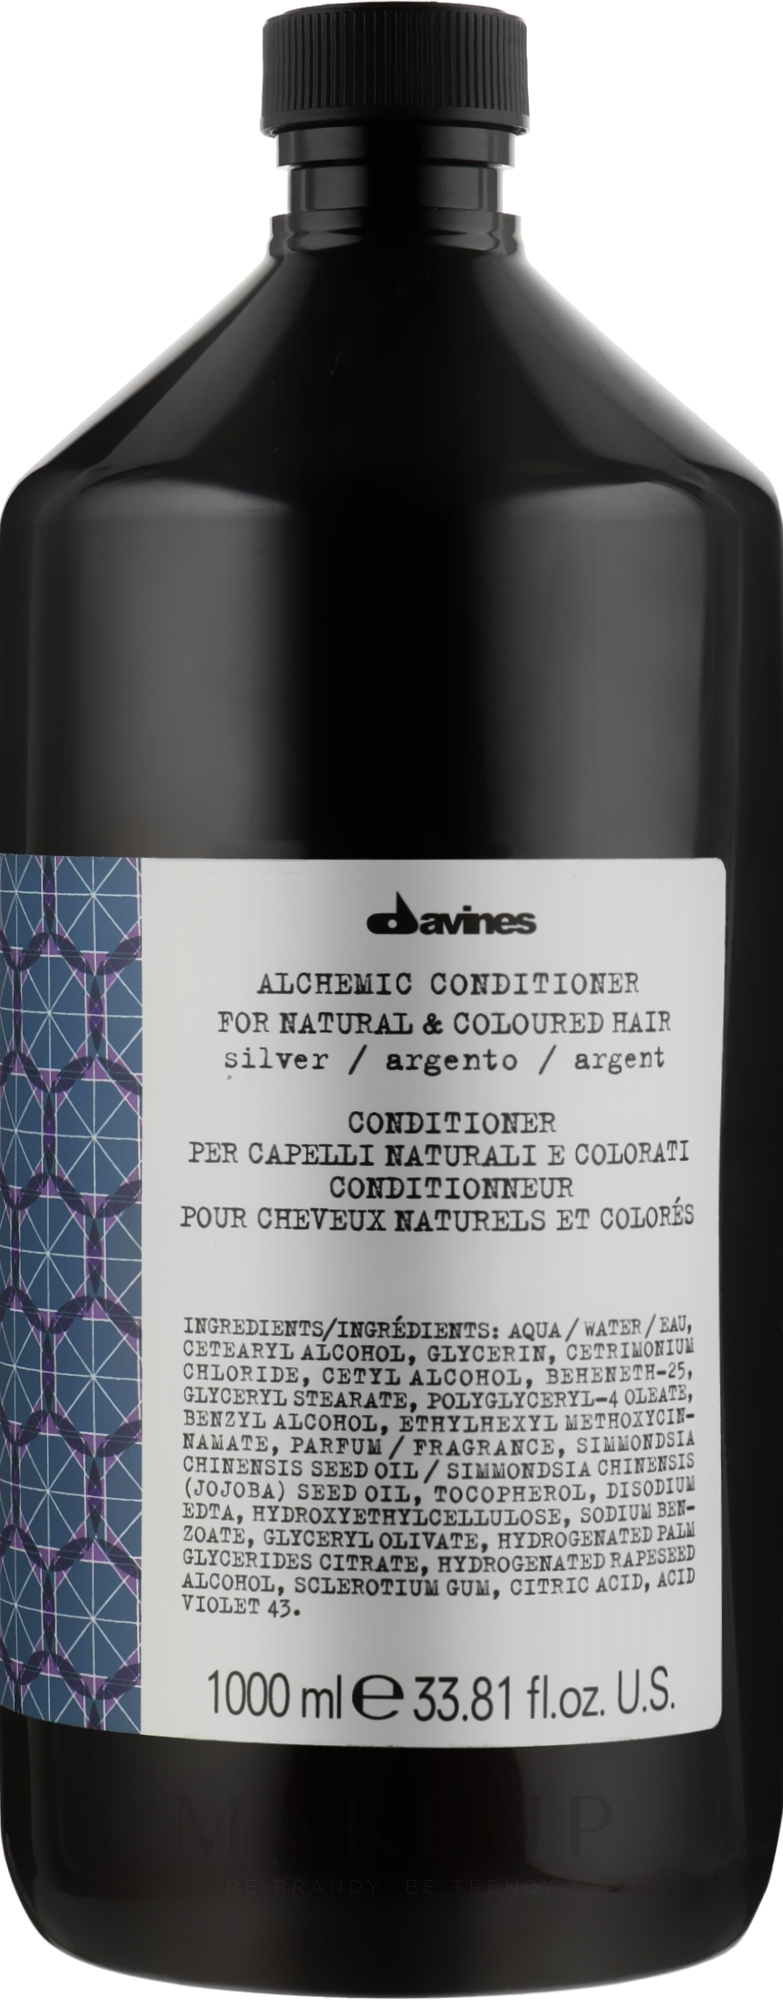 Conditioner für natürliches und gefärbtes Haar (Silver) - Davines Alchemic Conditioner — Foto 1000 ml